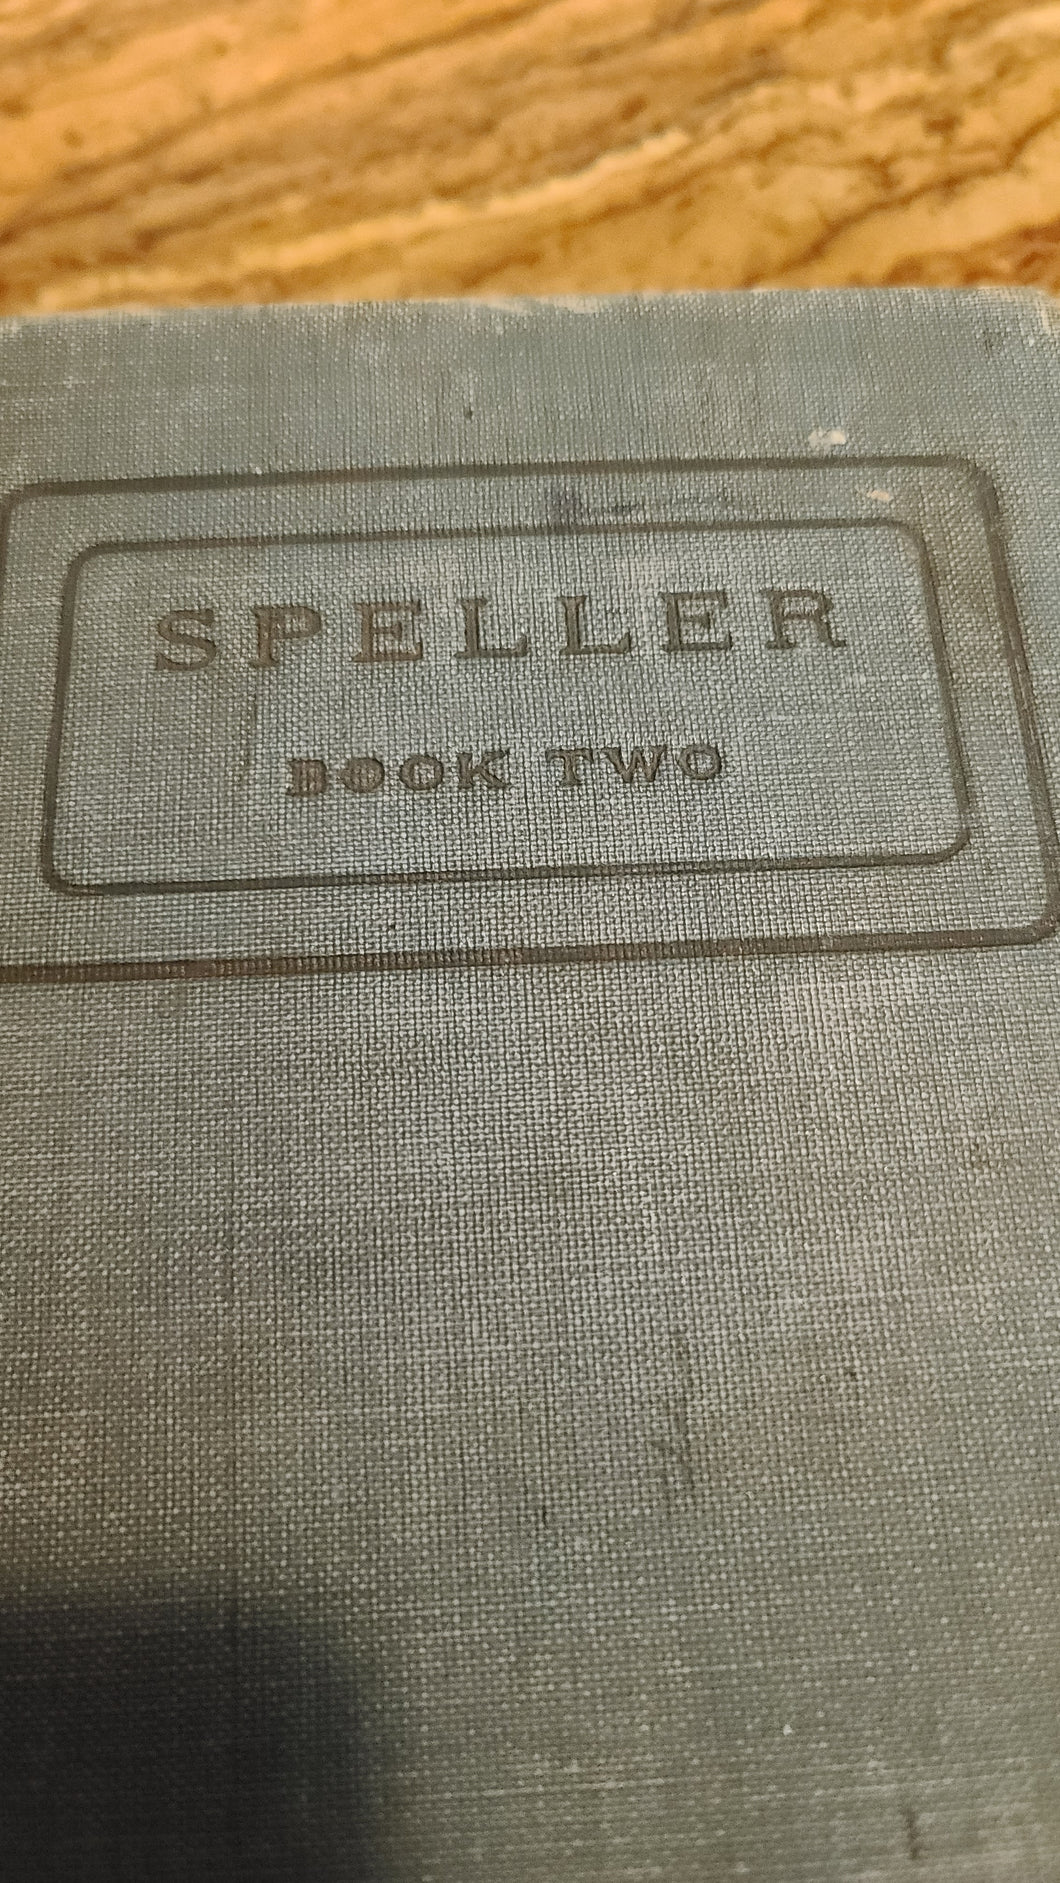 Speller Book Two